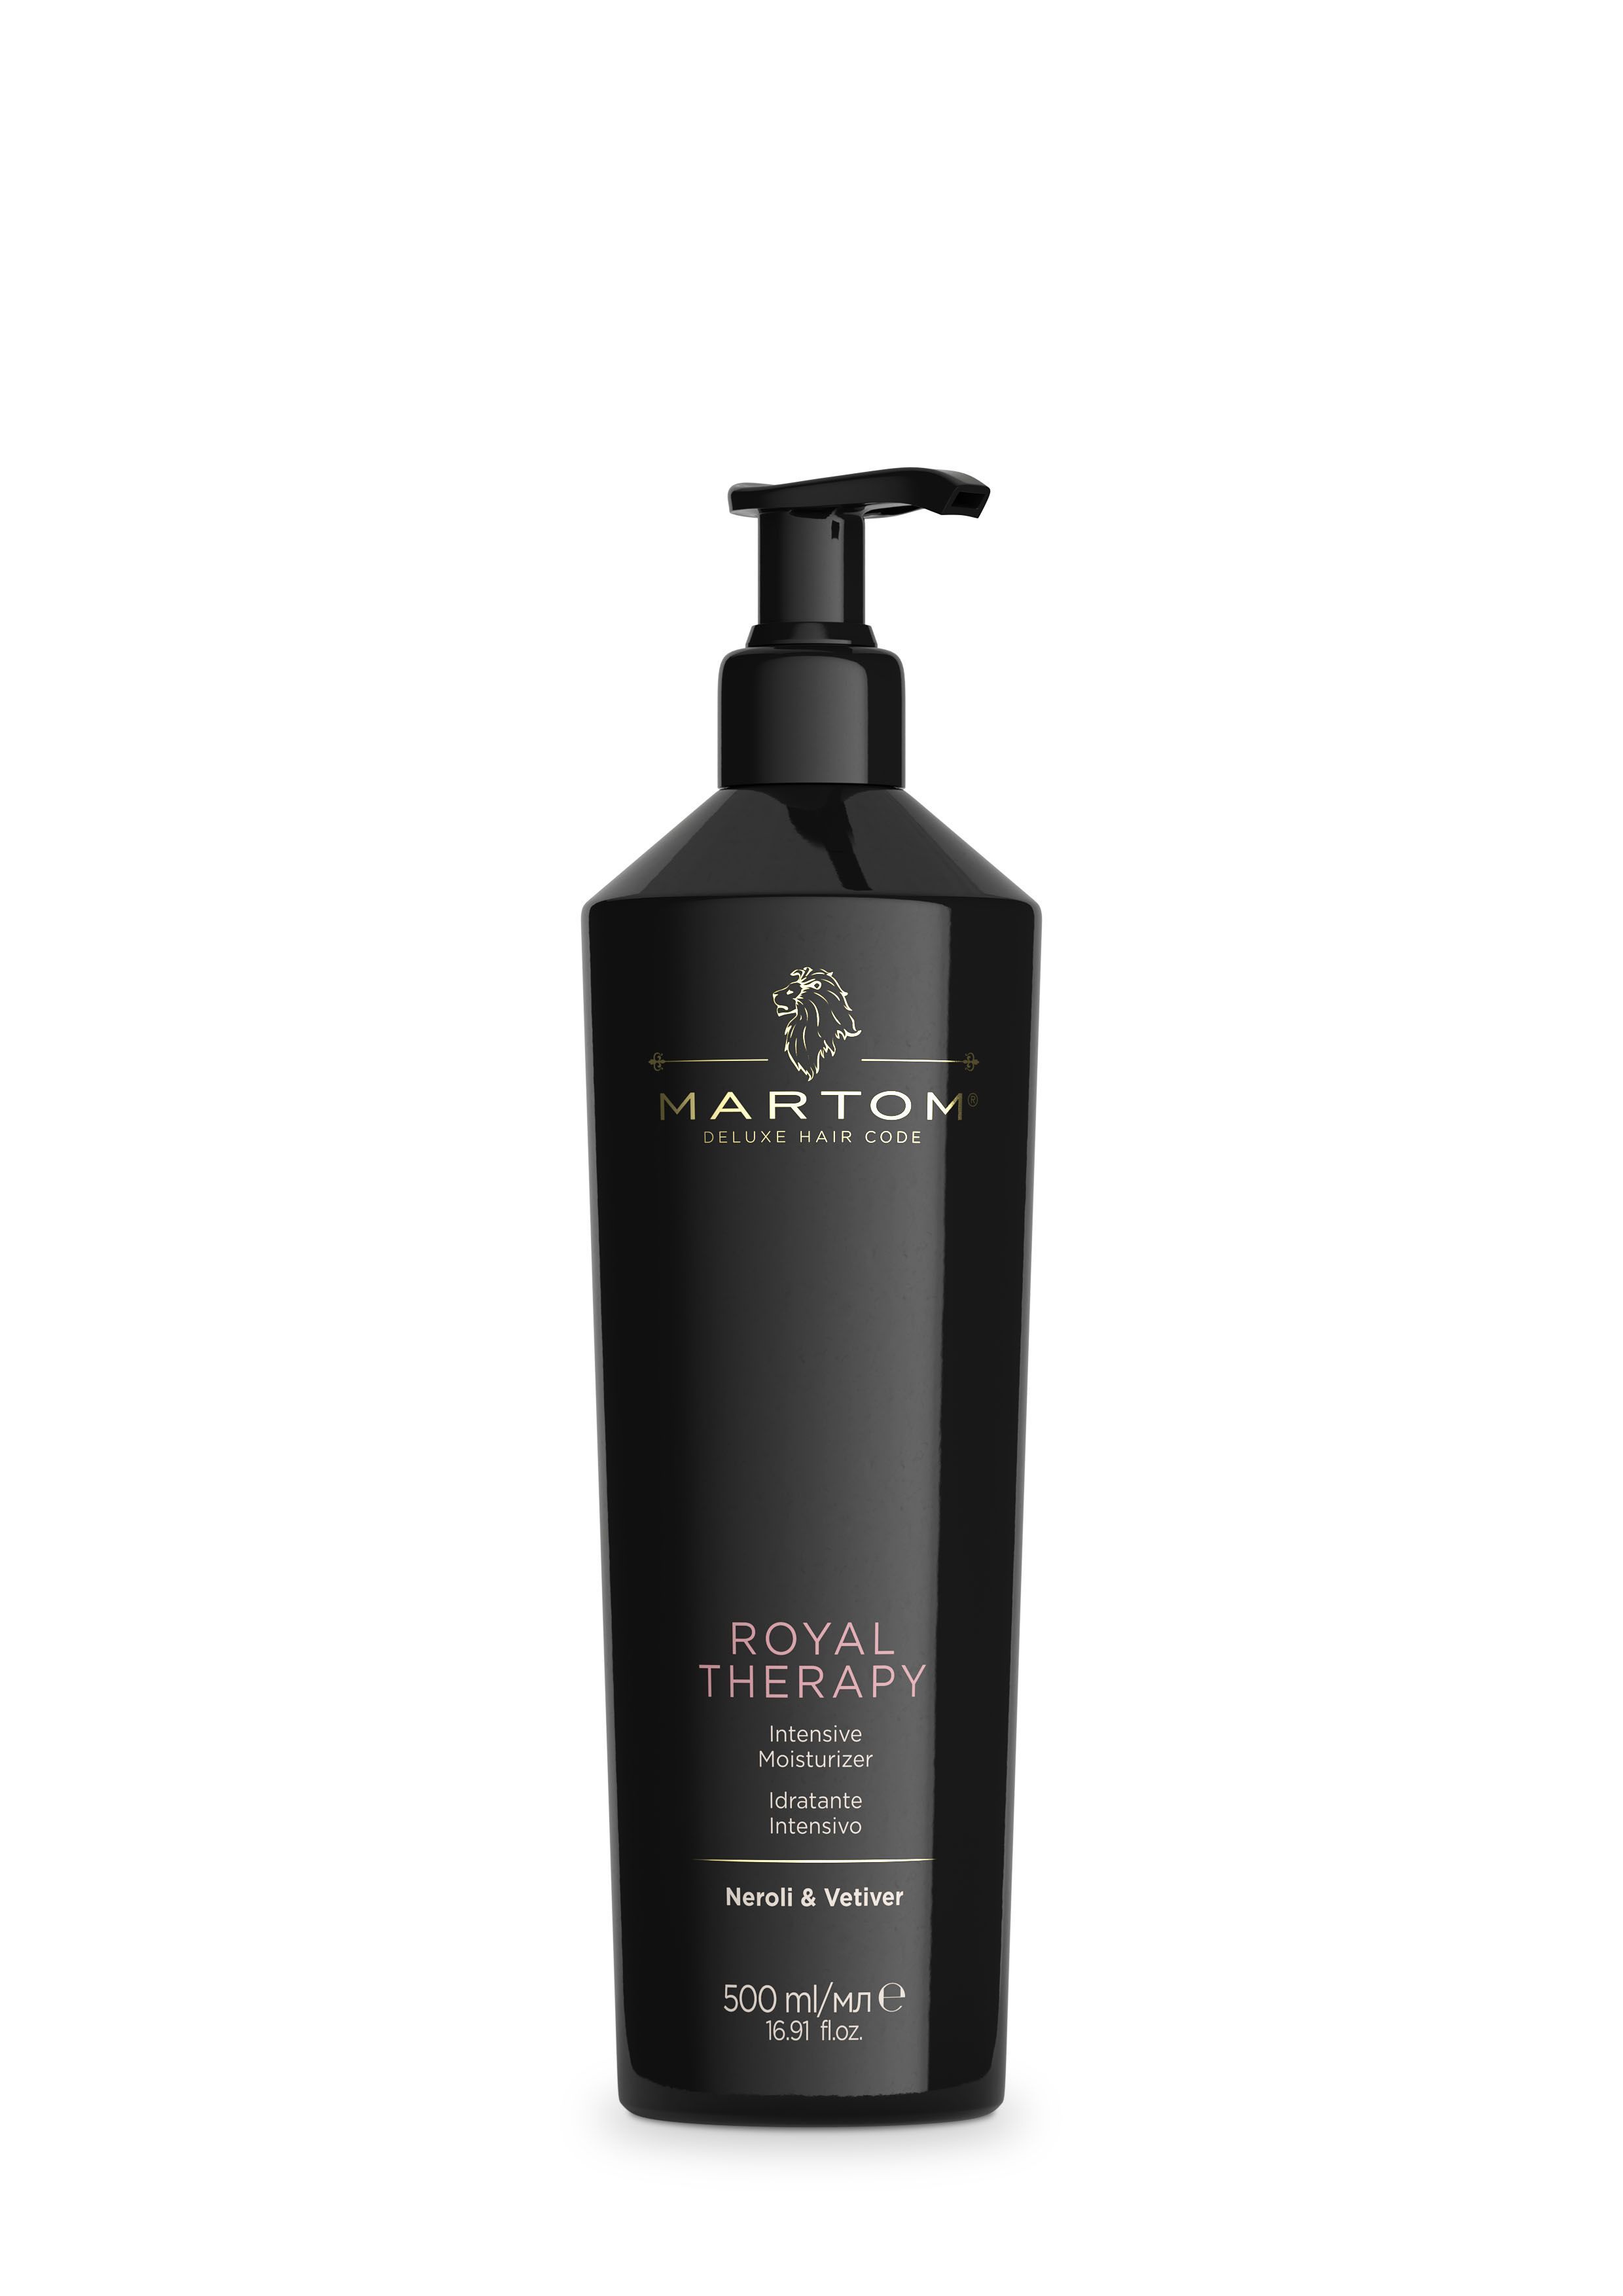 Martom Royal Therapy, Интенсивное увлажнение для волос Нероли & Ветивер